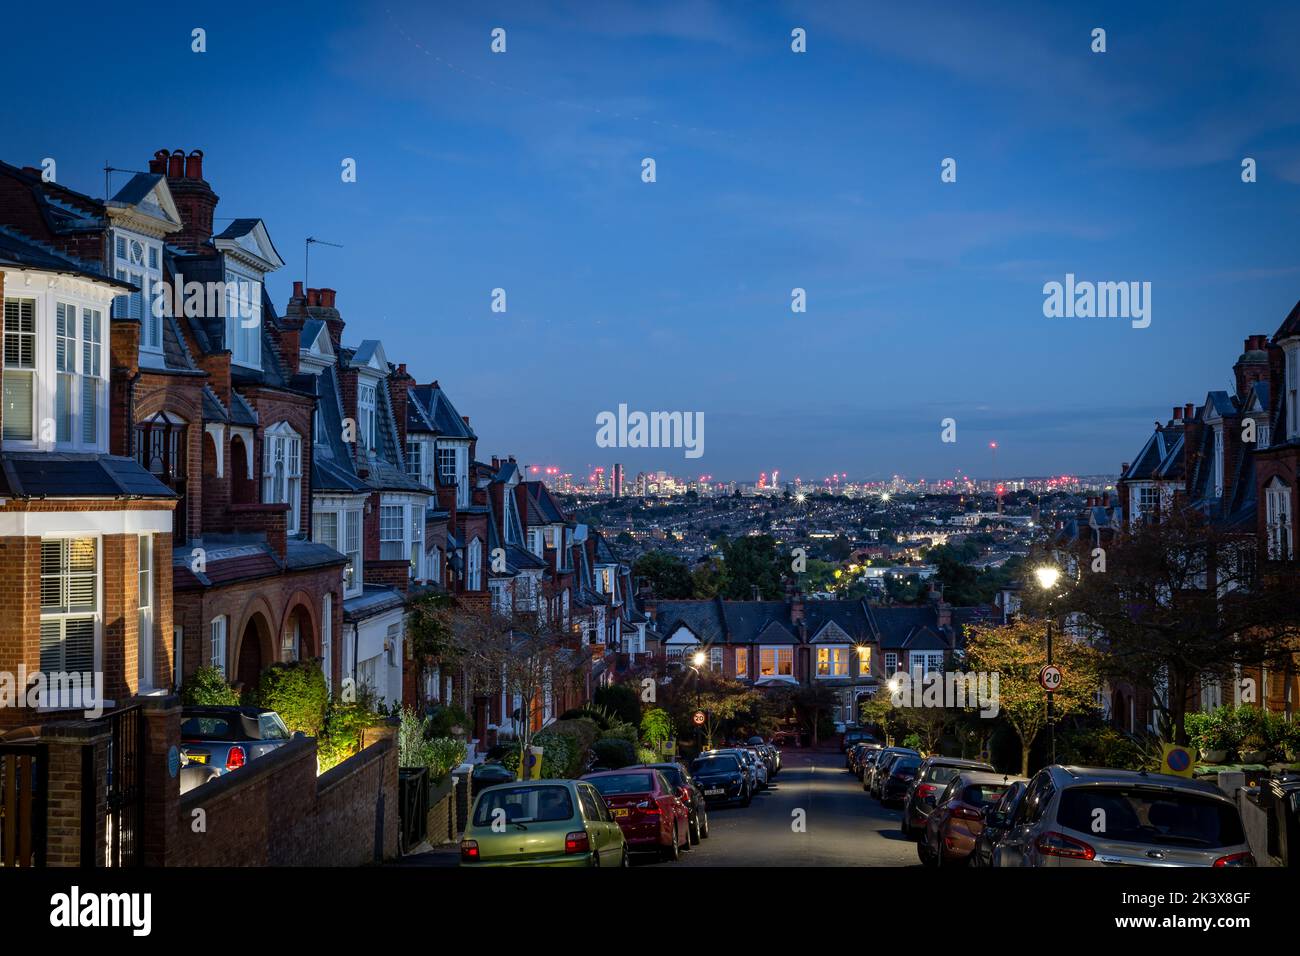 Ein Blick über London bei Nacht, der Reihenhäuser und die Skyline von London in Richtung City zeigt.Dies veranschaulicht den Wohnungsmarkt mit großer kreativer Wirkung Stockfoto